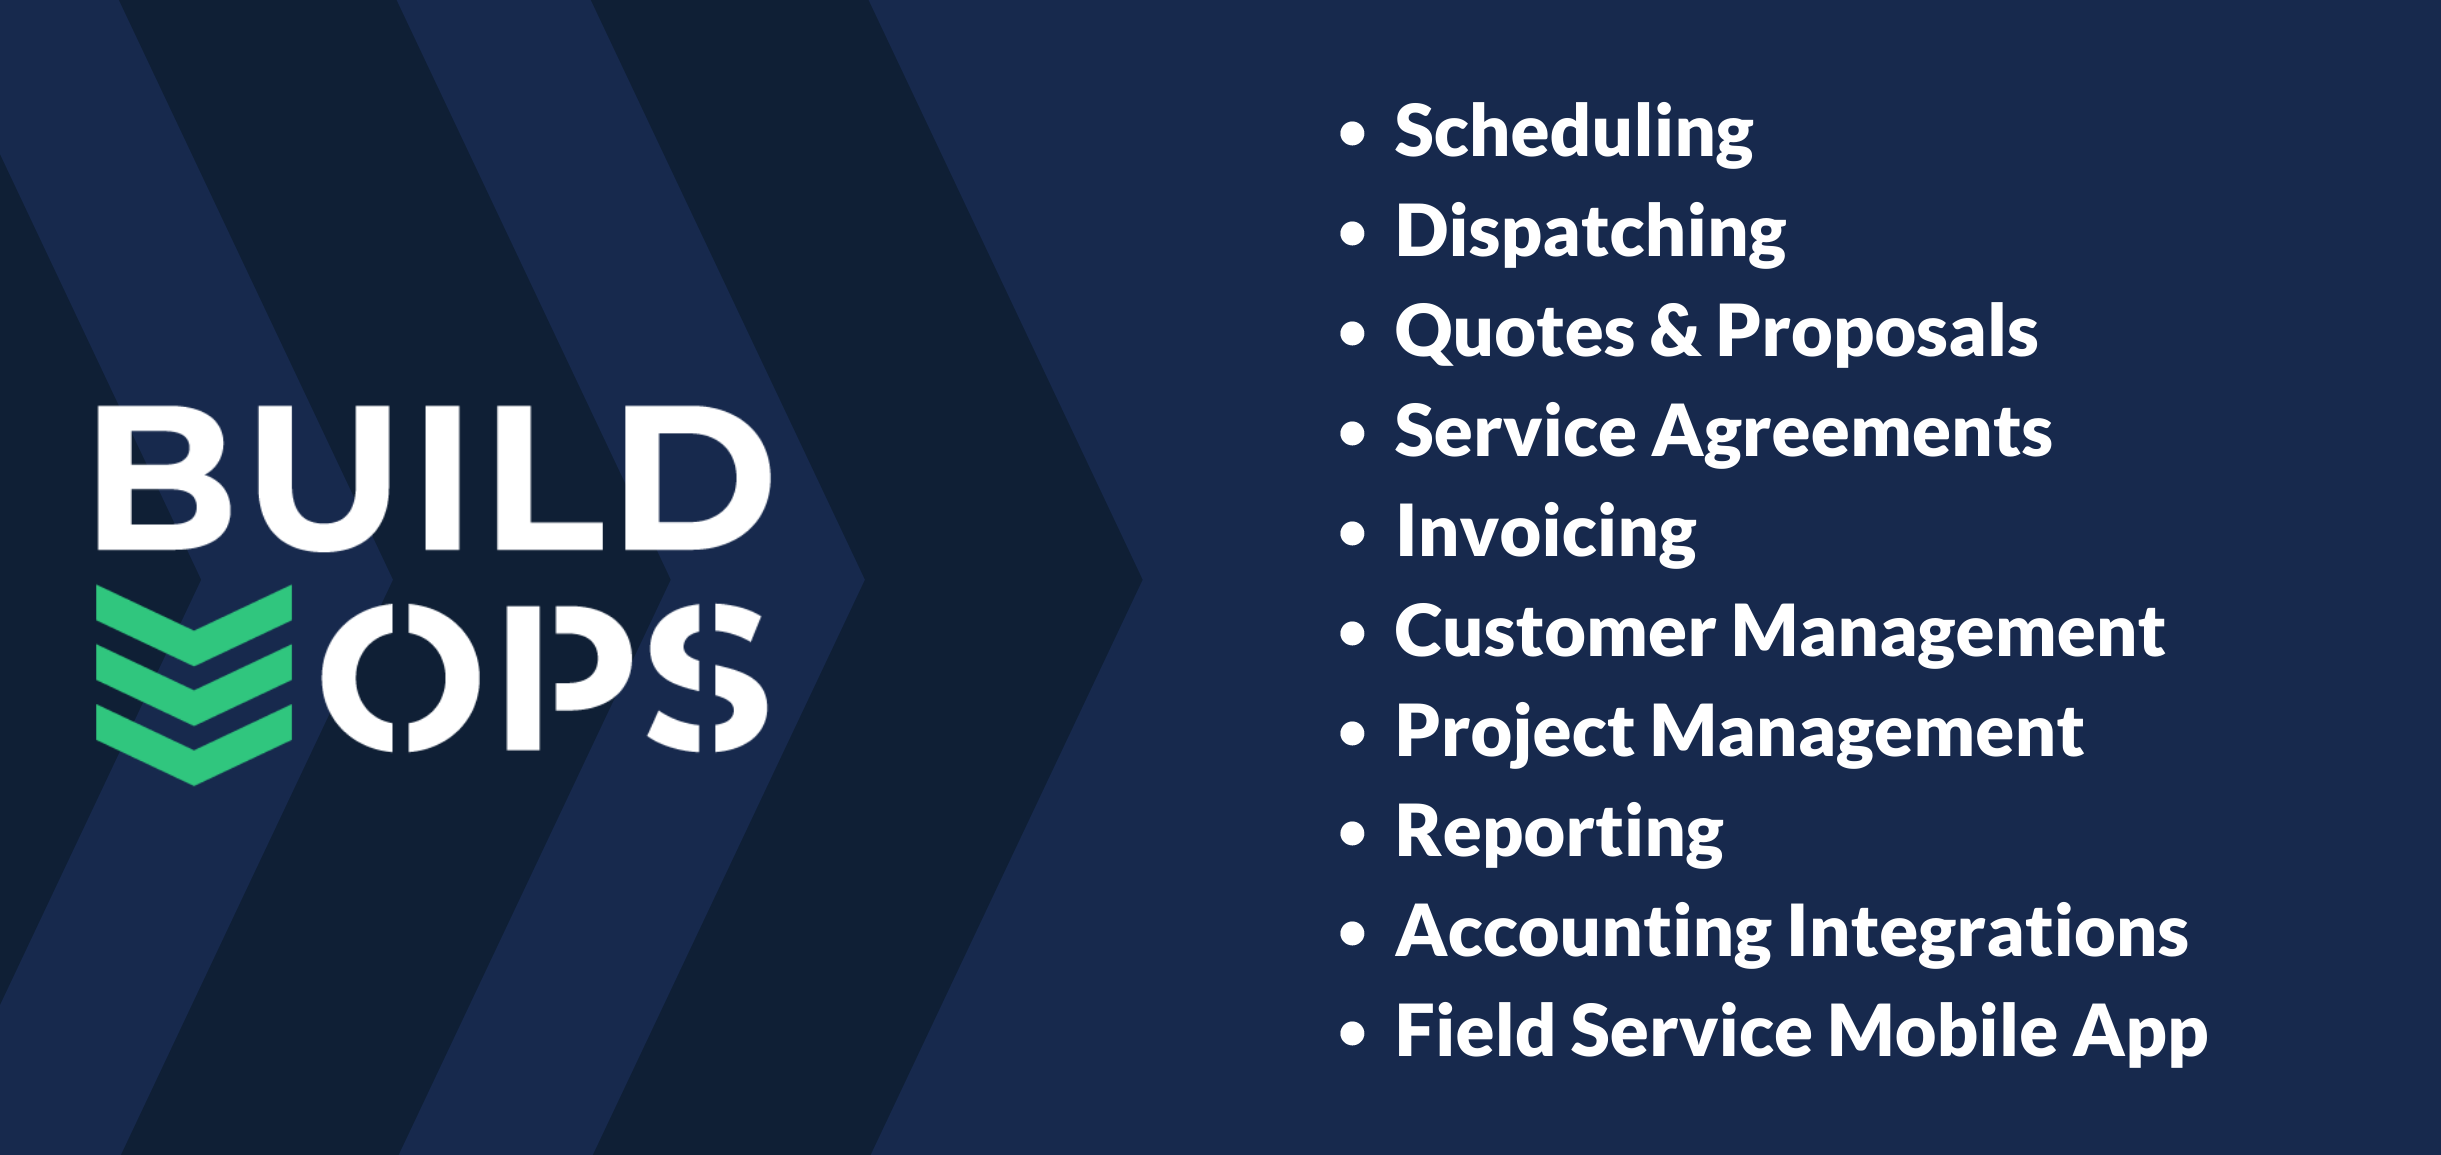 buildops field service management platform features